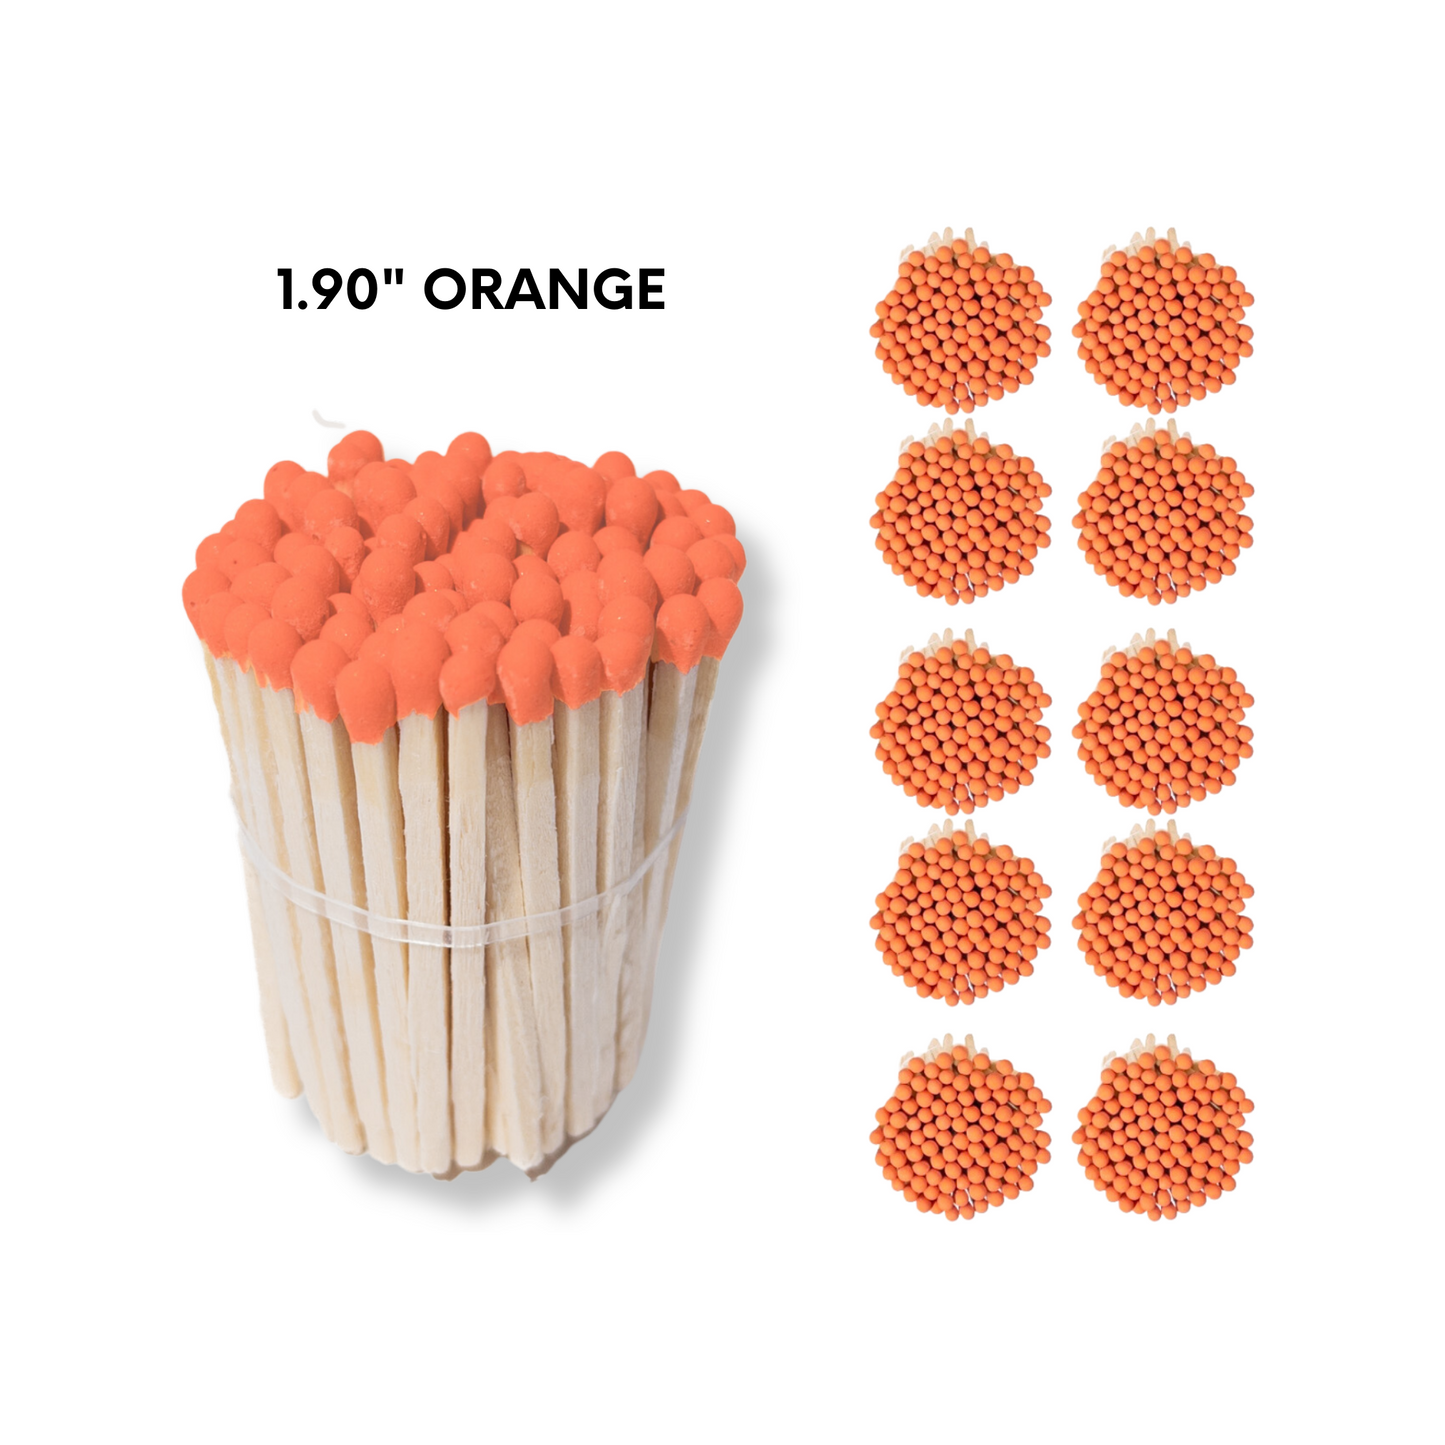 Orange Tip 1.90" - Safety Matches